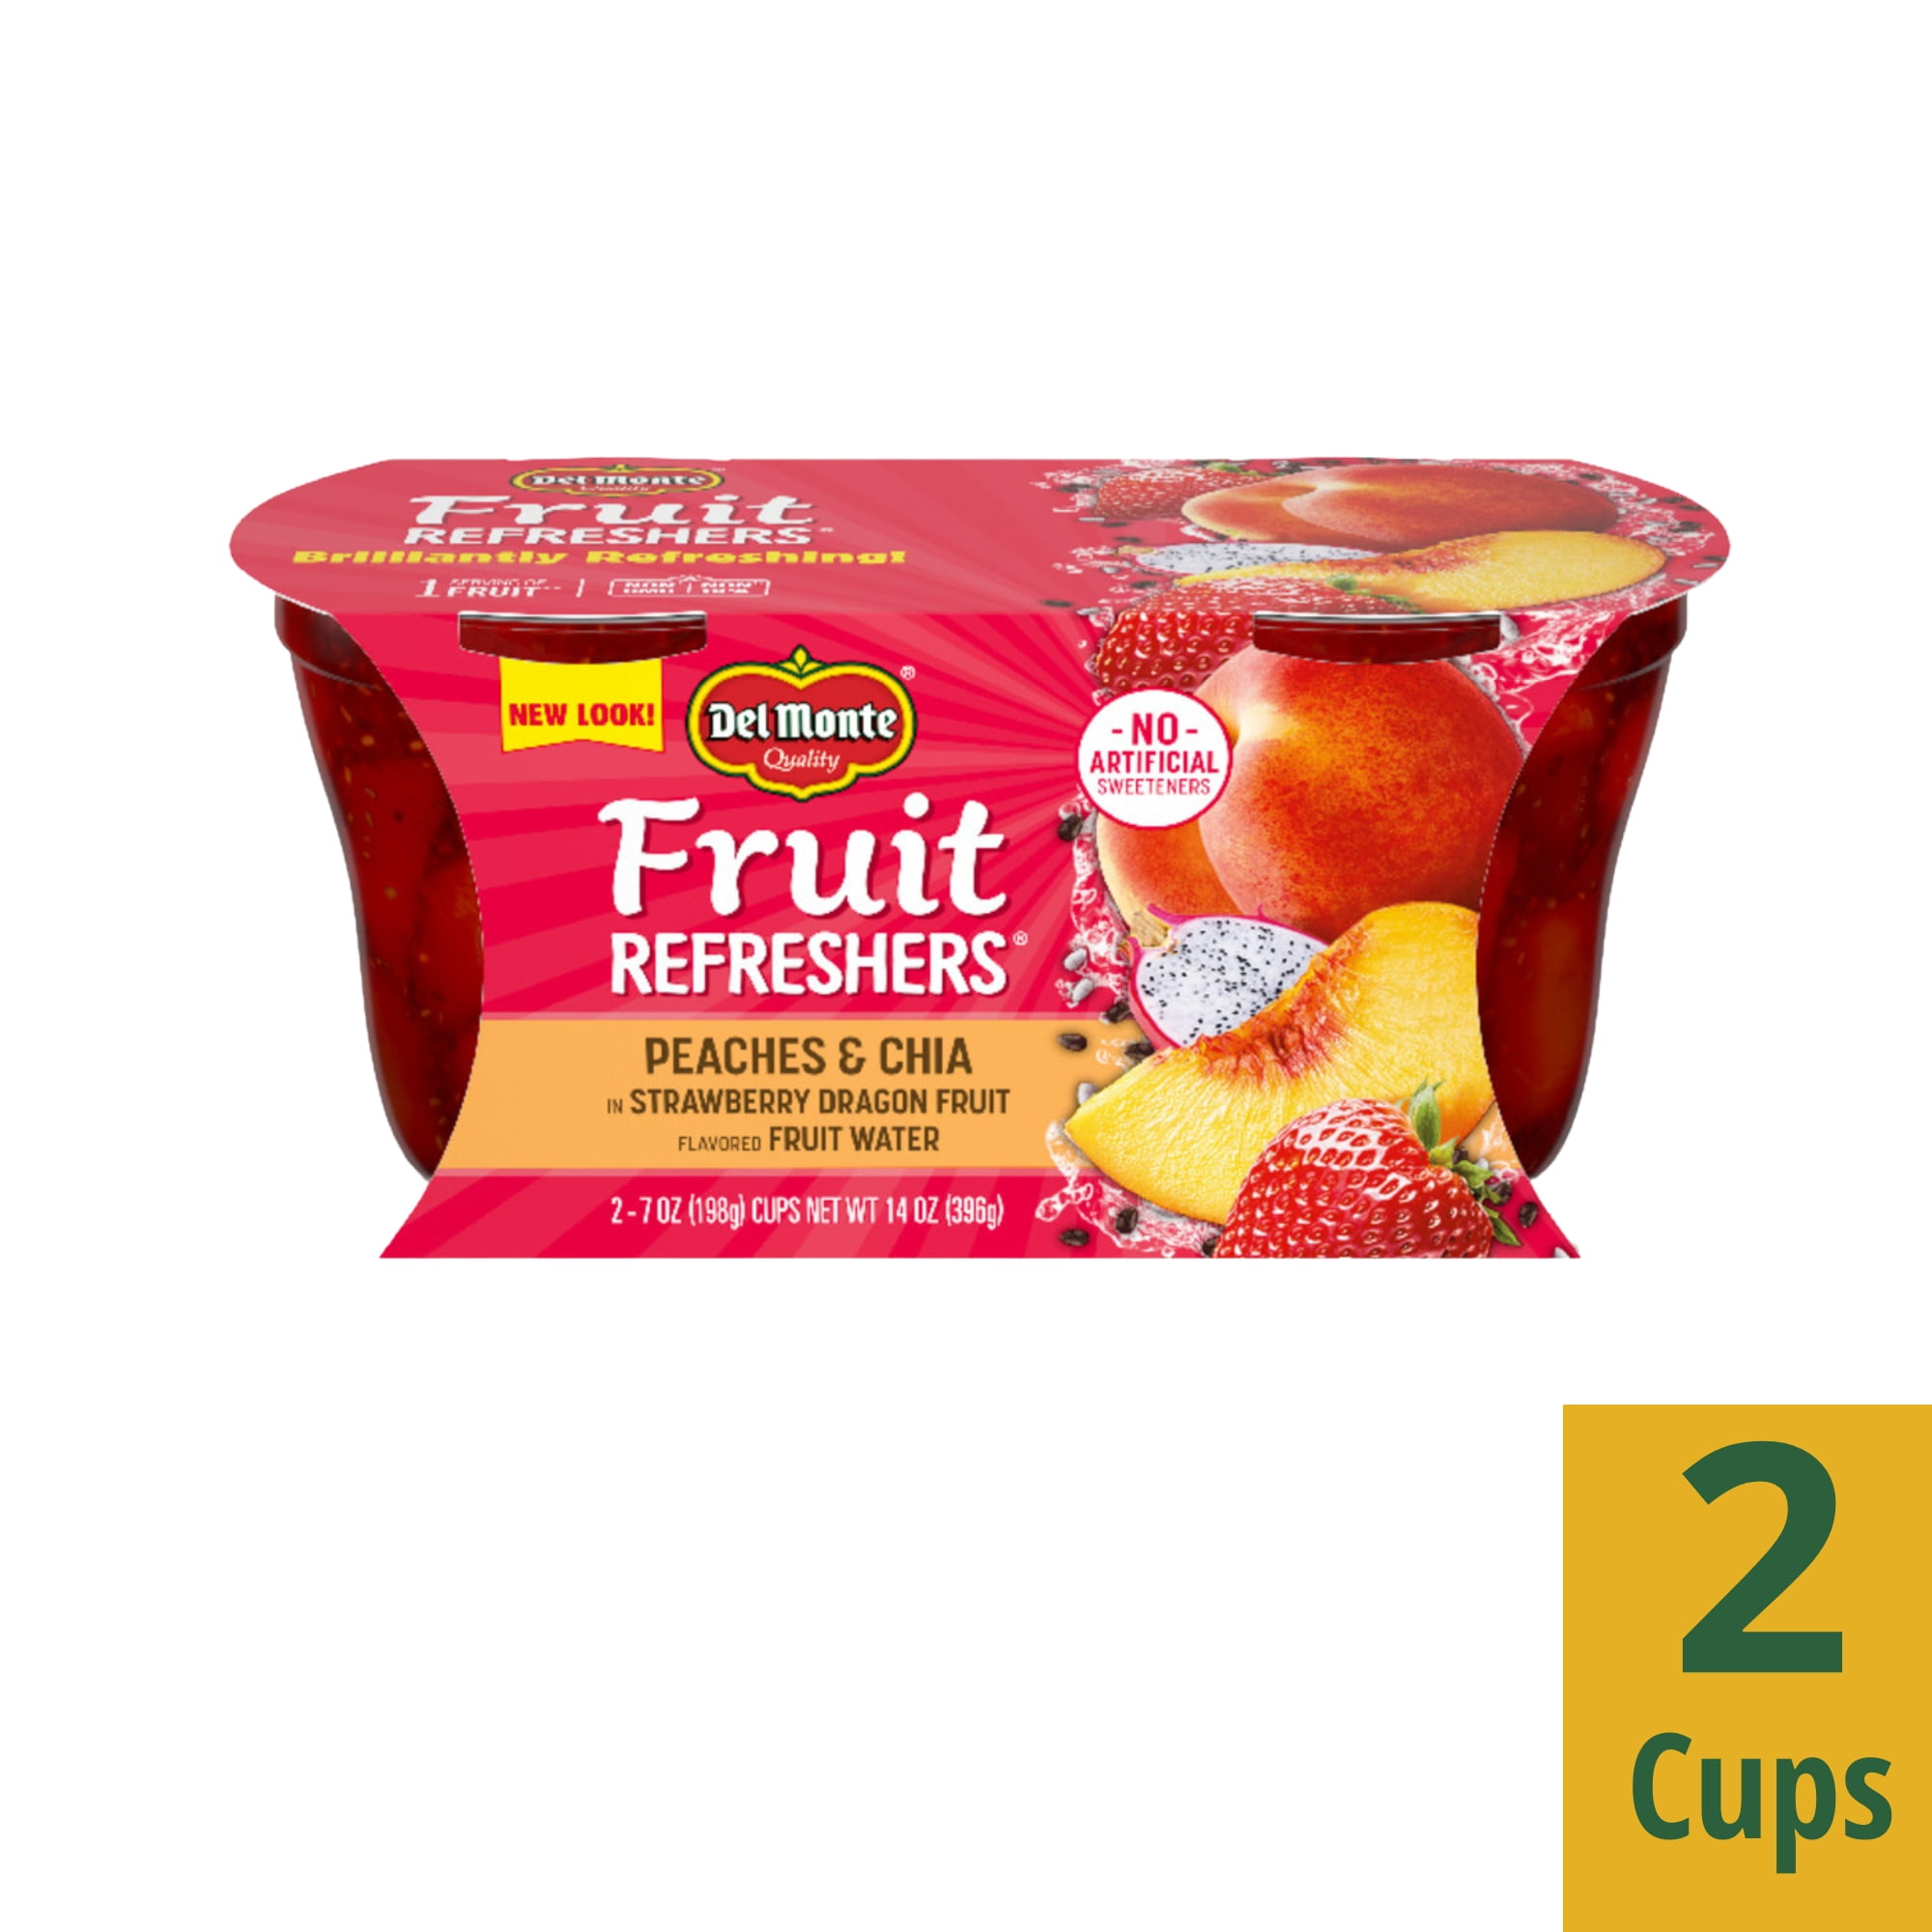 Dole® Mandarin Orange Fruit Bowls® No Sugar Added, 12 Count - Dole® Sunshine